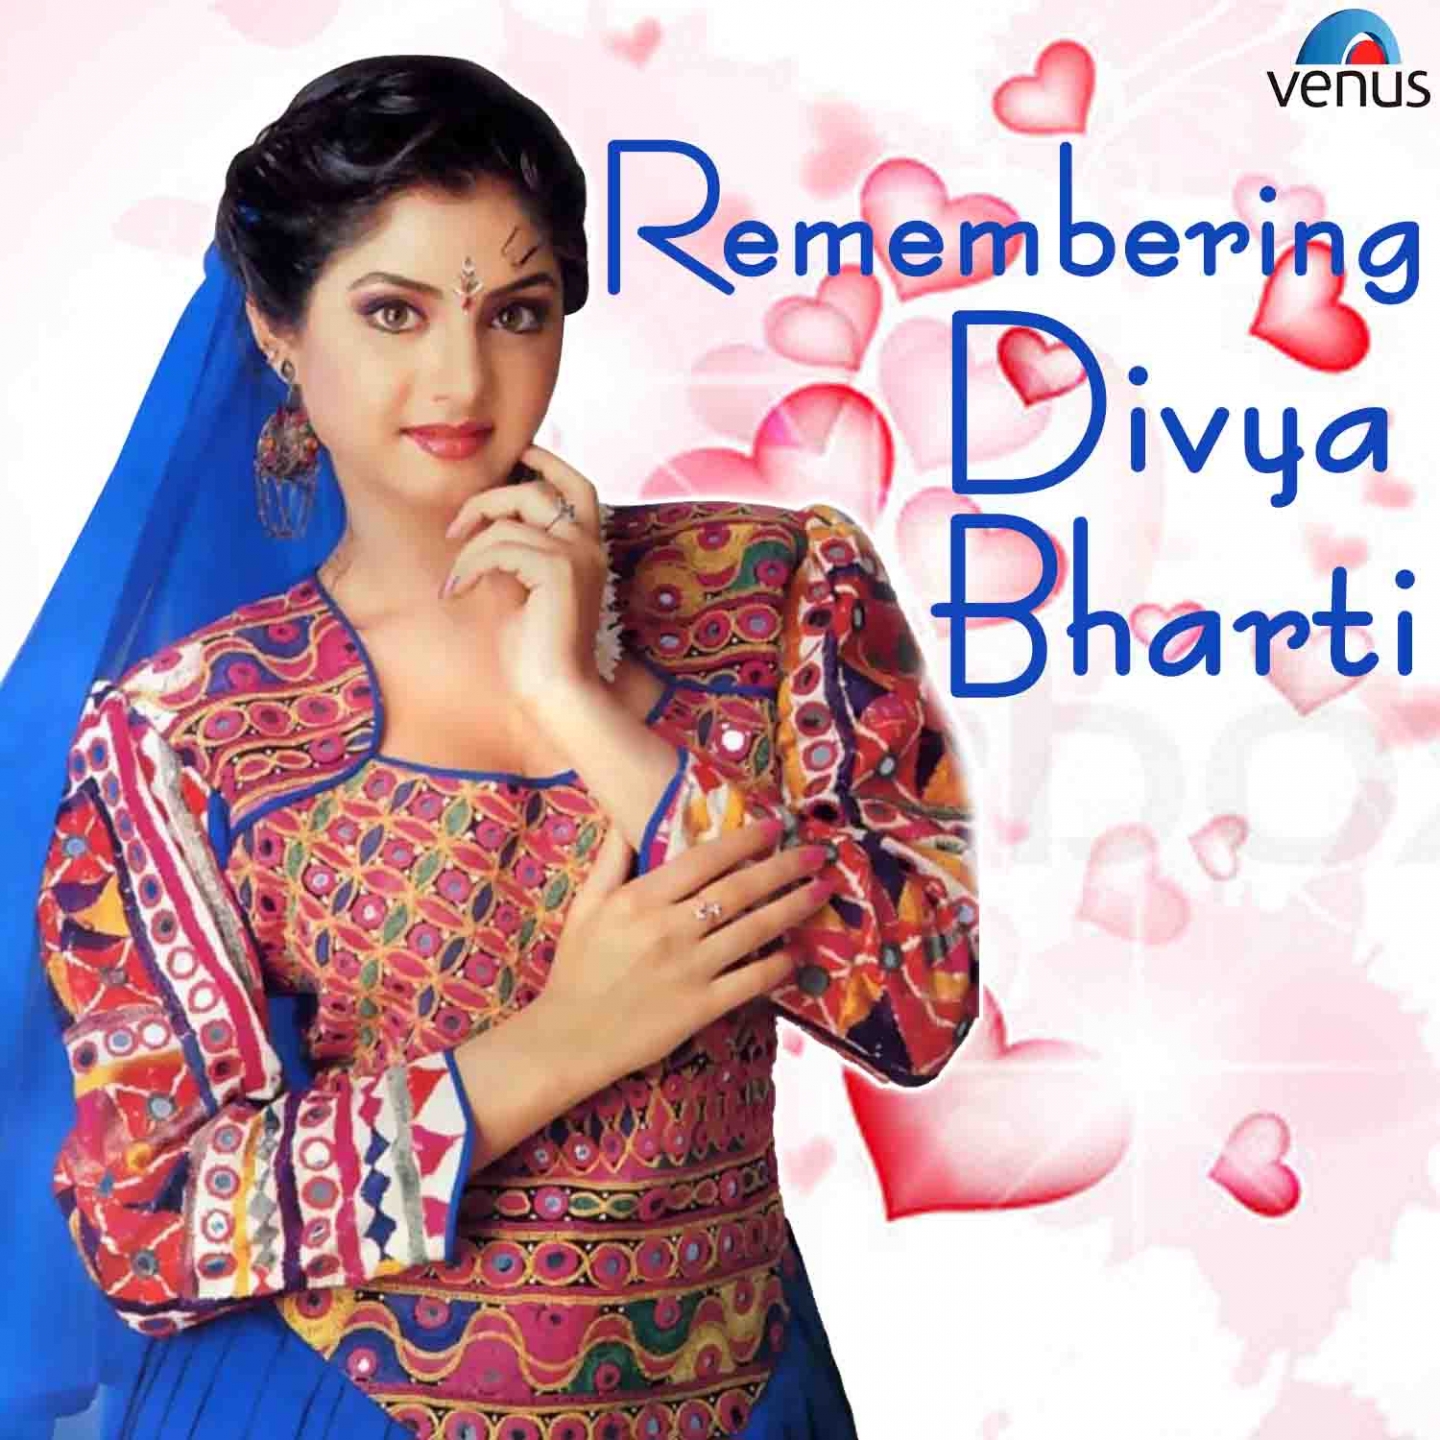 Remembering Divya Bharti